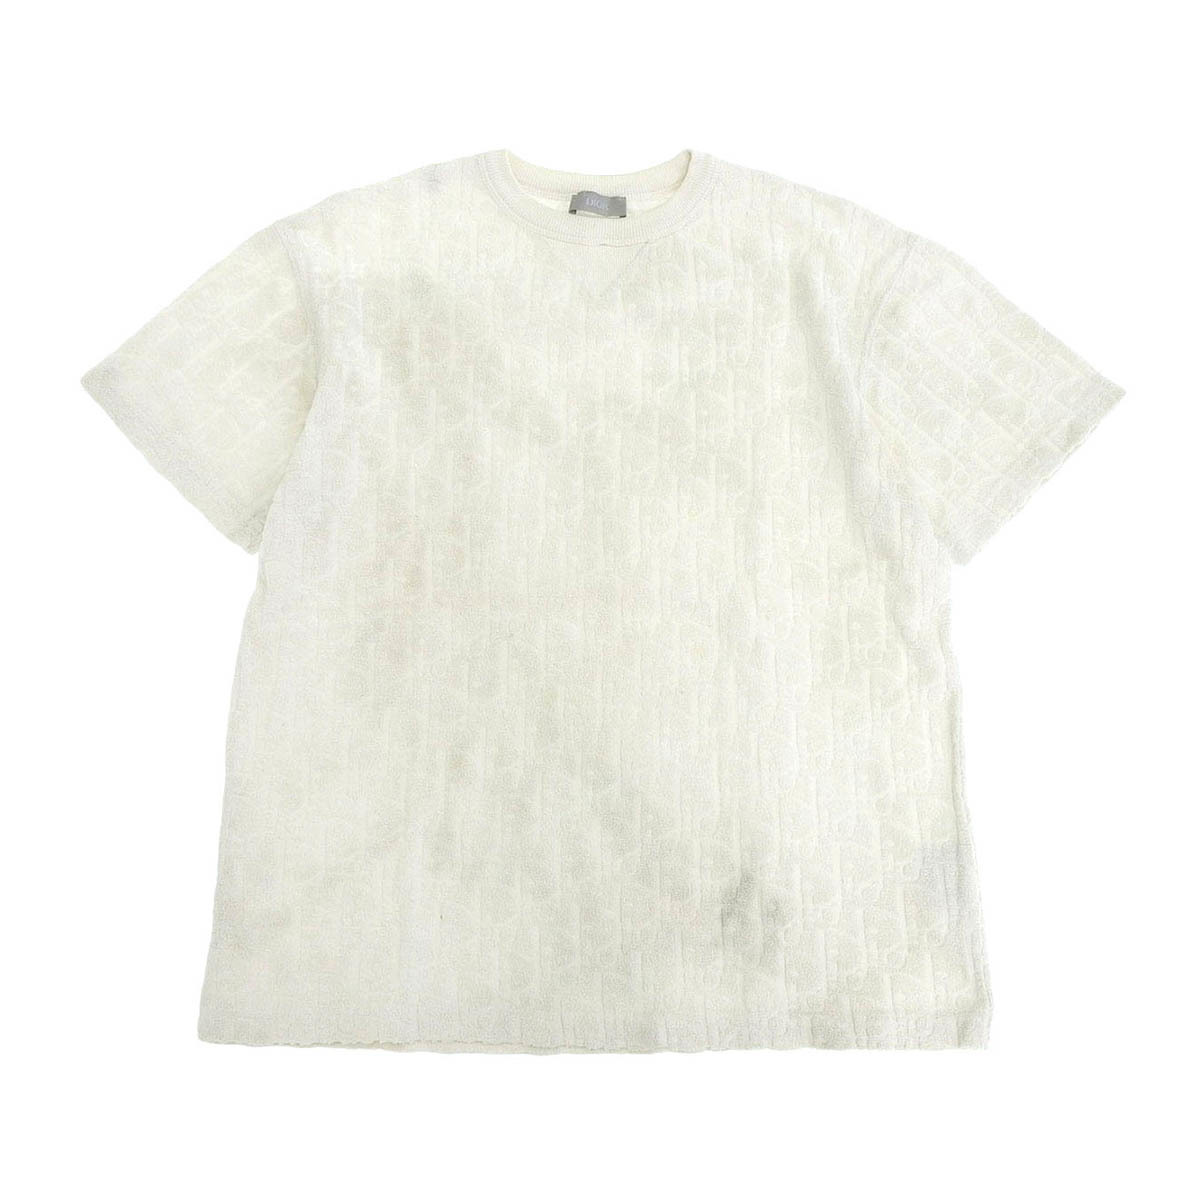 ディオール オブリーク テリーコットン ジャカード Tシャツ 113J692A0614 メンズ ホワイト Dior 中古 【アパレル・小物】_画像1